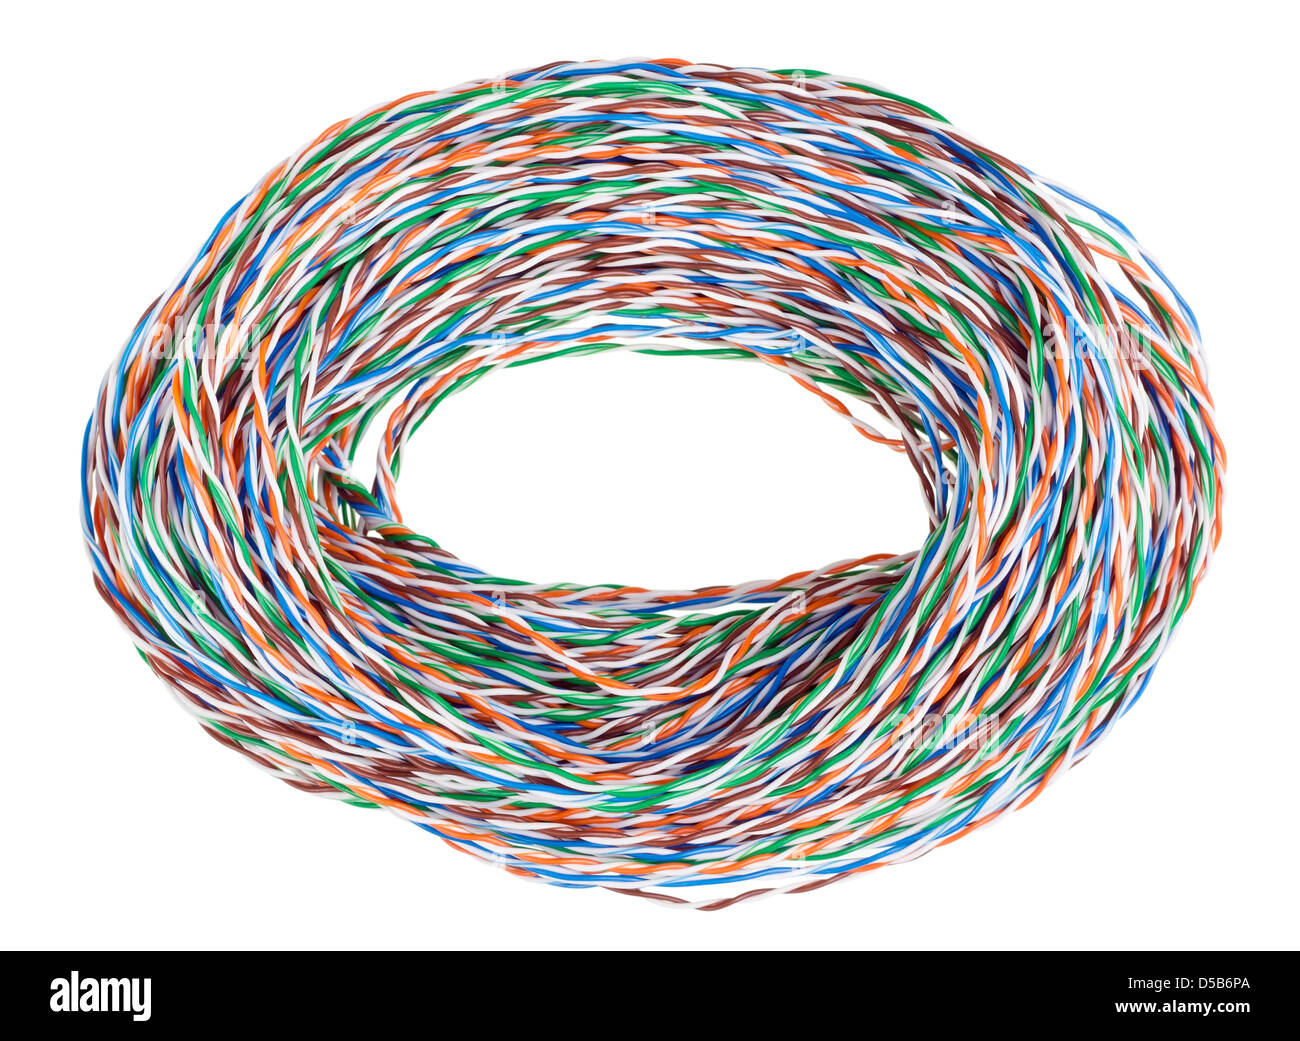 Große Haufen von einer Farbe twisted-Pair-Kabel für Netzwerk und Internet.  Isoliert auf weiss Stockfotografie - Alamy